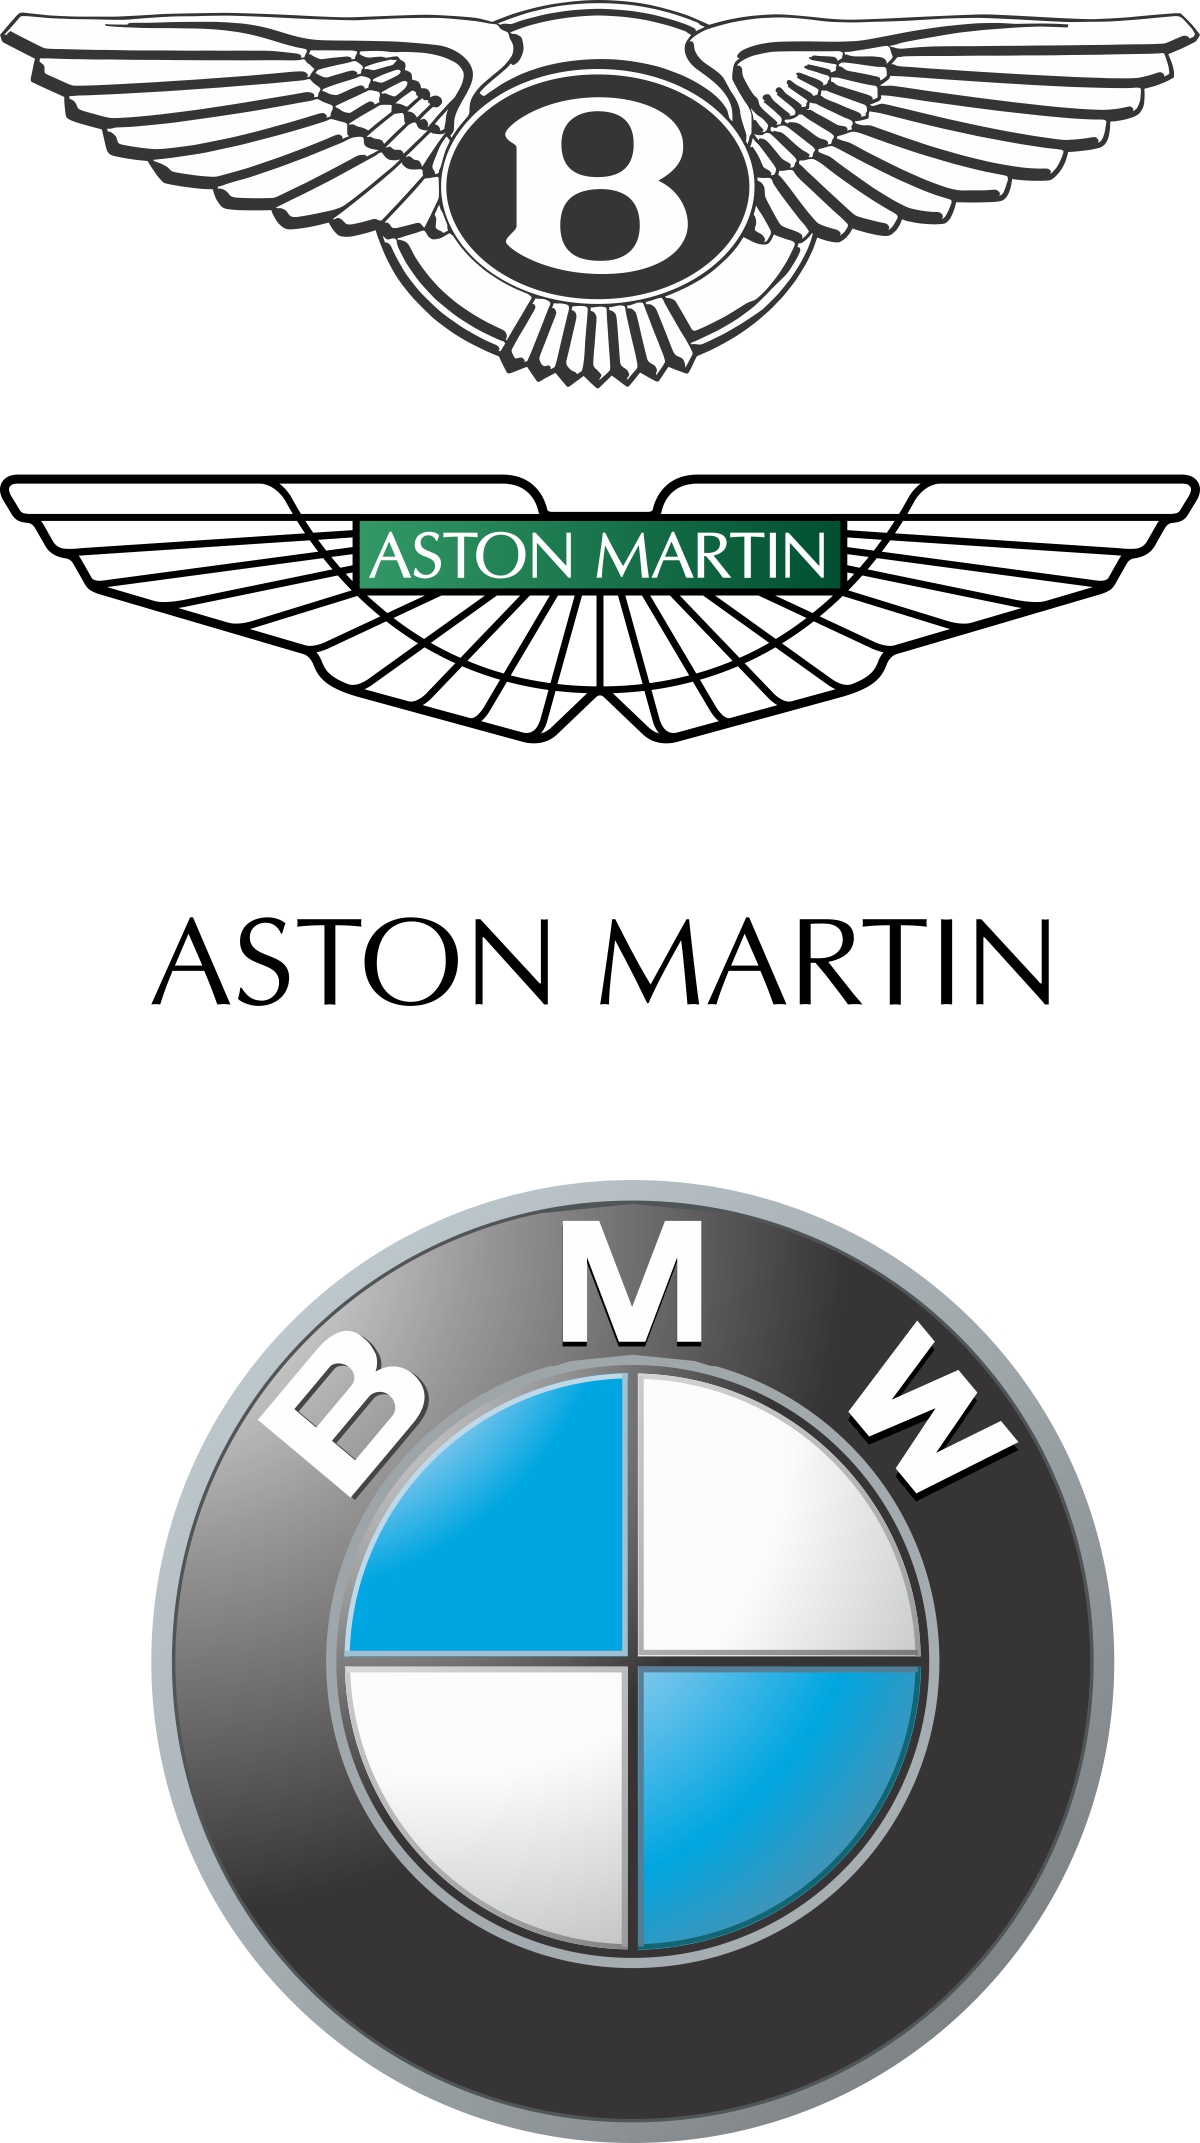 BMW болон Bentley нар нисэх онгоцноос угшилтай. Aston Martin санамсаргүй эх орон нэгт Bentley-ийг дуурайж хуулбарлаж ээ.